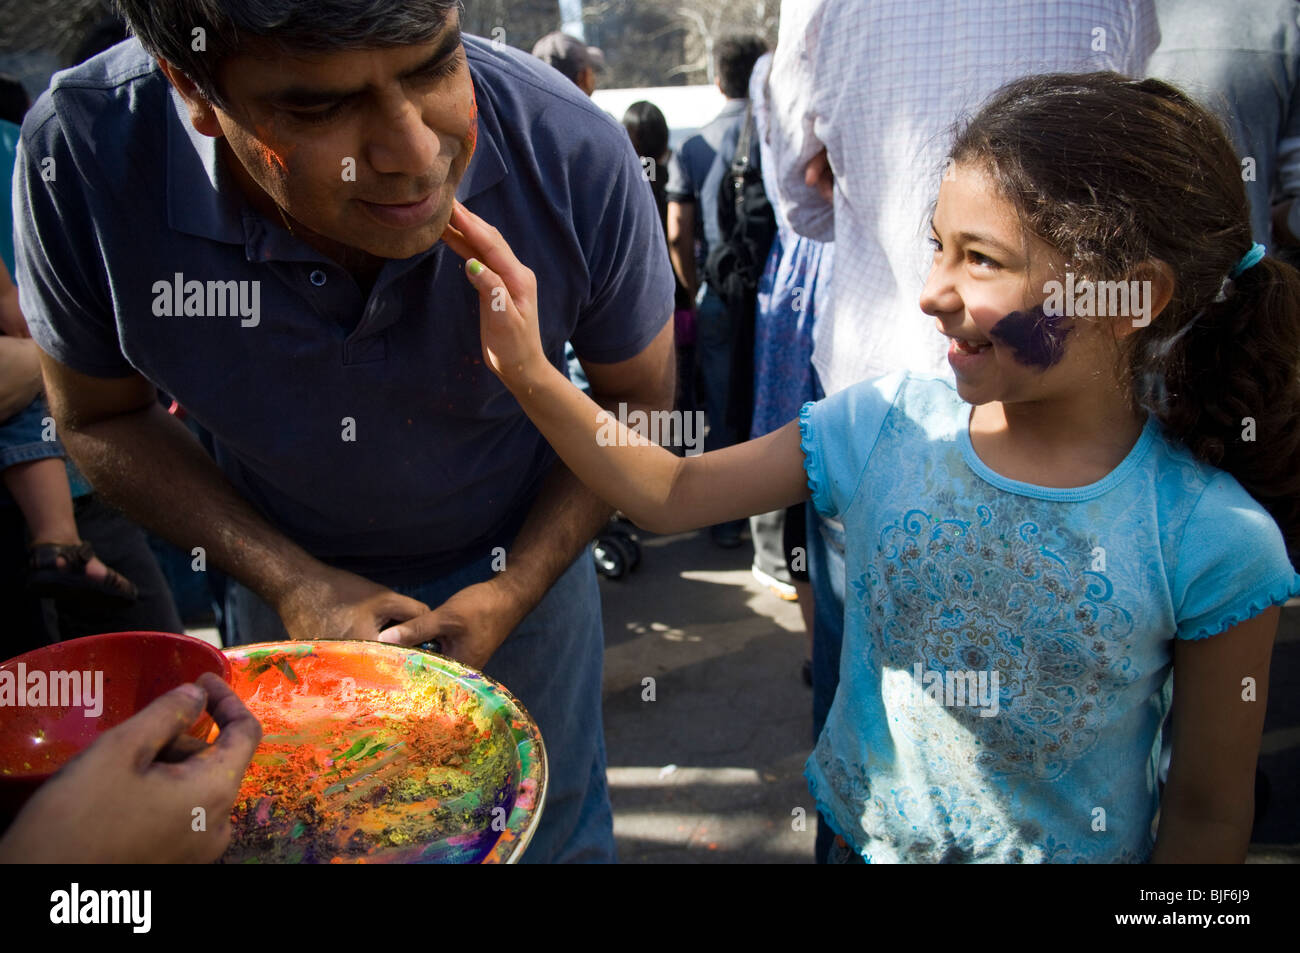 Polvere colorata viene applicata per i volti dei partecipanti come si celebra la vacanza indiano di Holi a street festival di NY Foto Stock